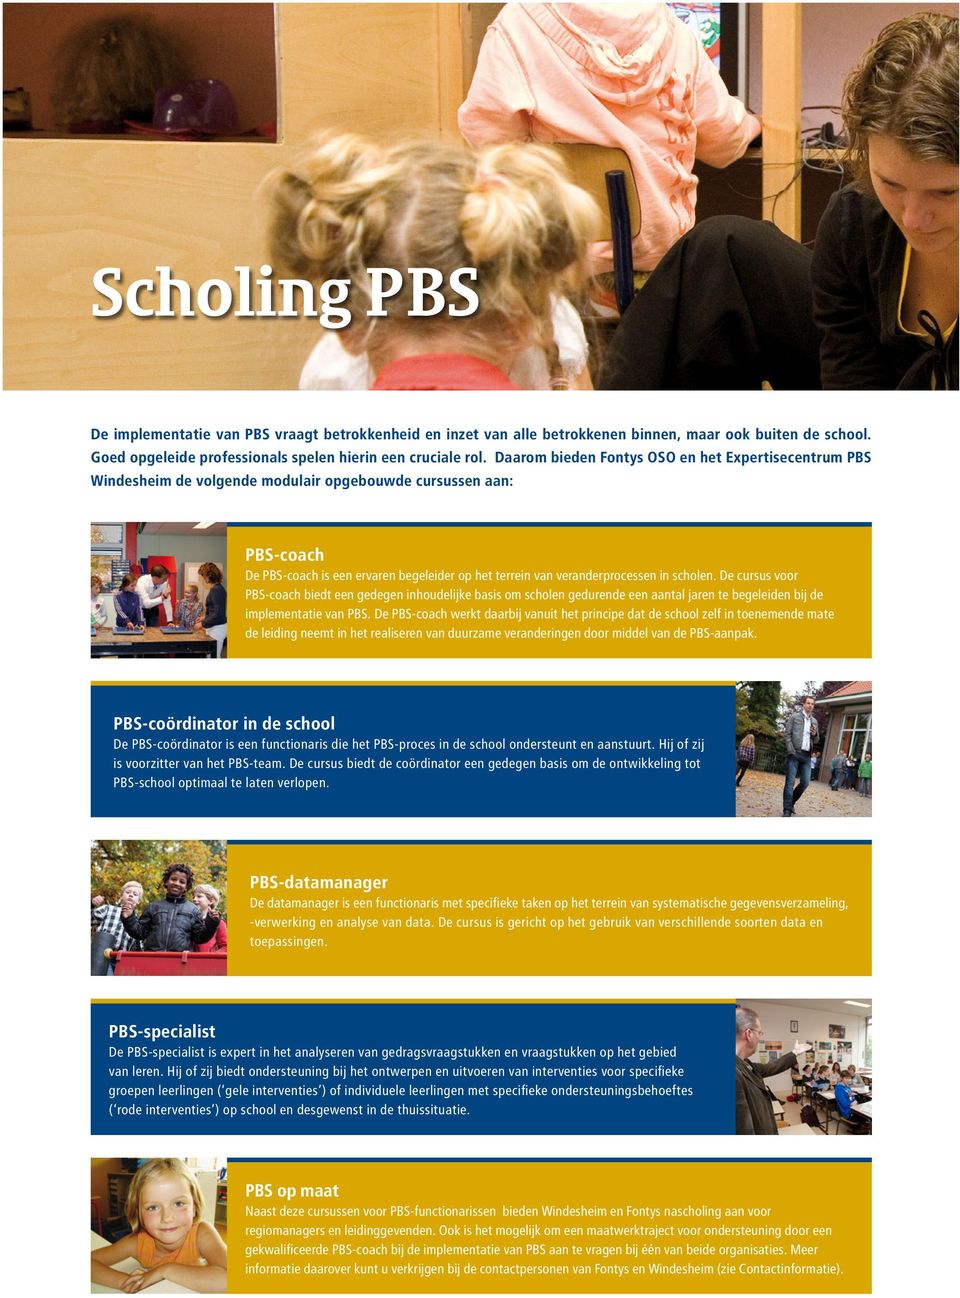 scholen. De cursus voor PBS-coach biedt een gedegen inhoudelijke basis om scholen gedurende een aantal jaren te begeleiden bij de implementatie van PBS.